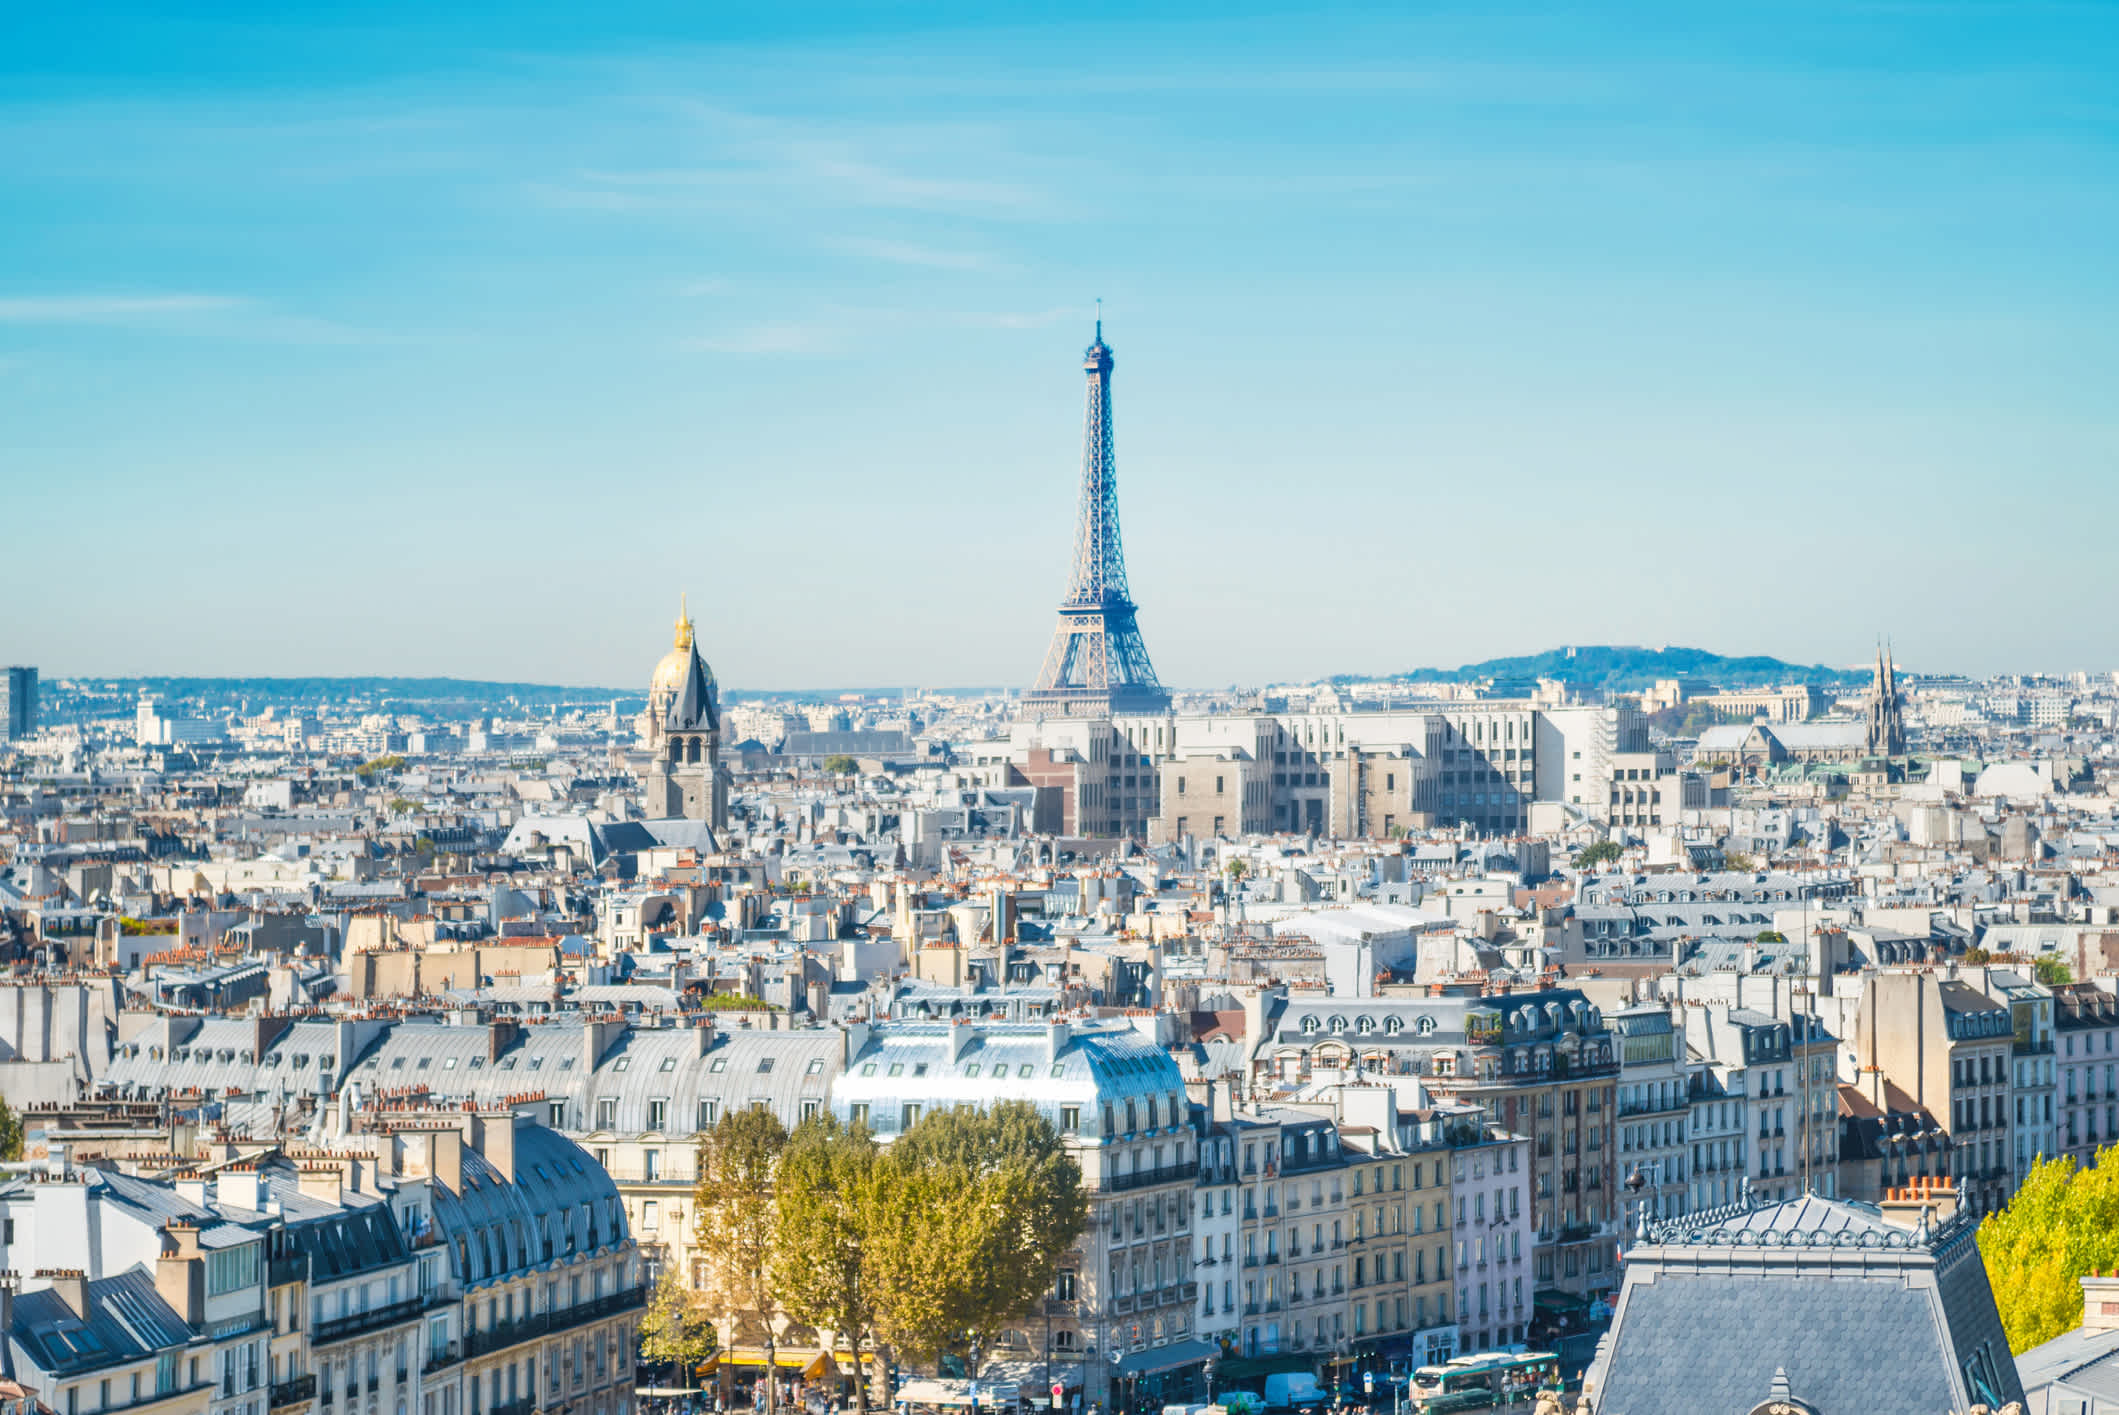 Pariser Stadtbild mit Eiffelturm, Frankreich

